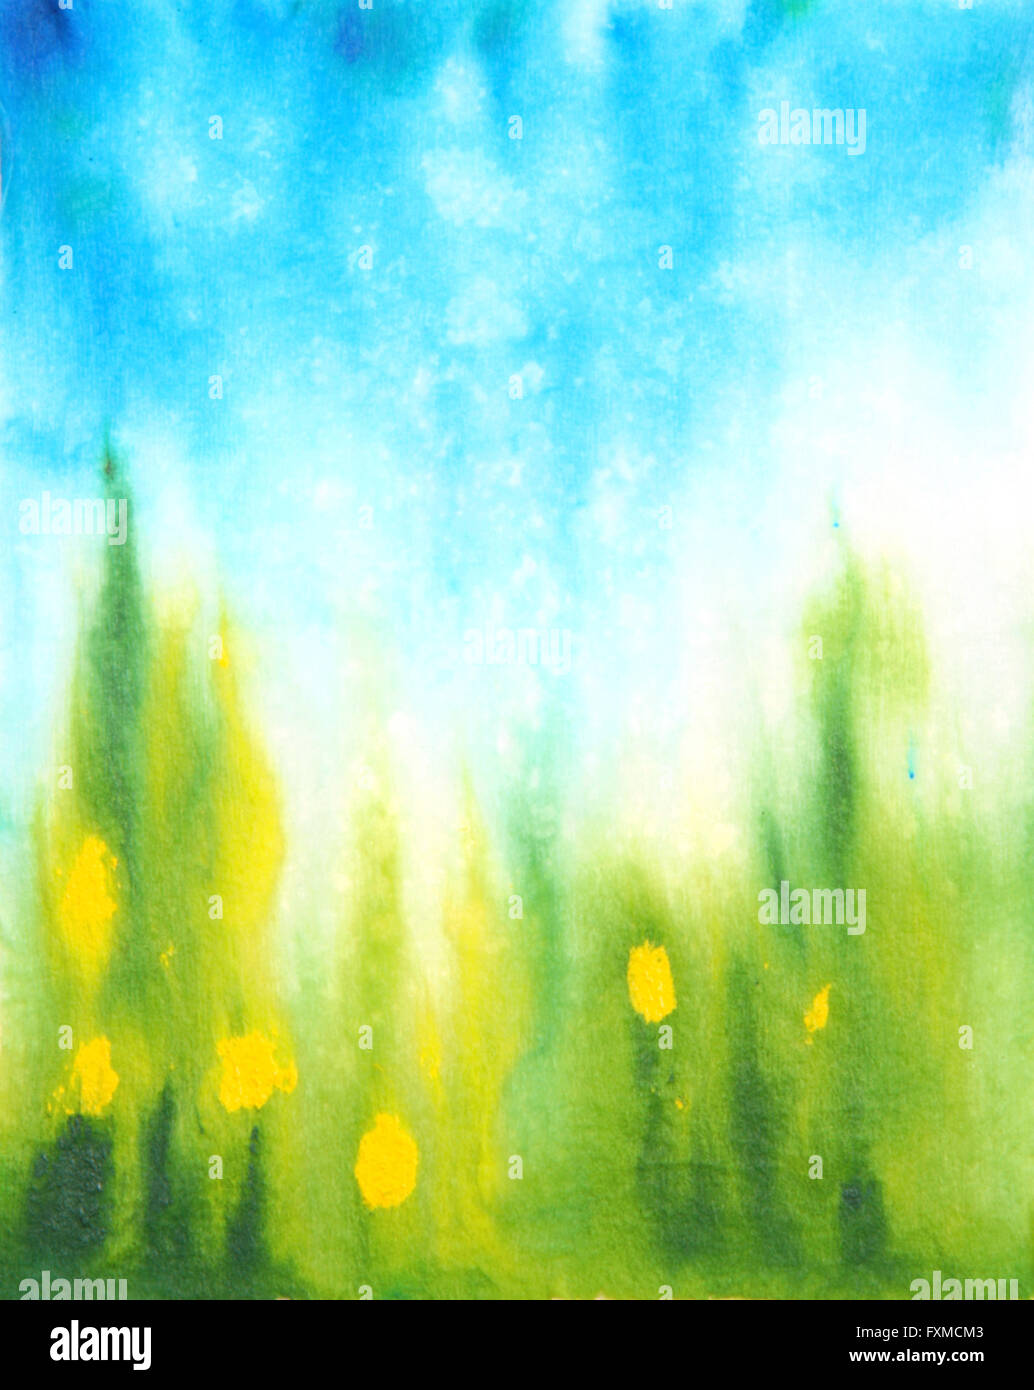 Abstract disegnati a mano sfondo acquerelli: cielo blu, verde erba e fiori di colore giallo. Ottimo per le textures, vintage design e carta da parati di lusso Foto Stock